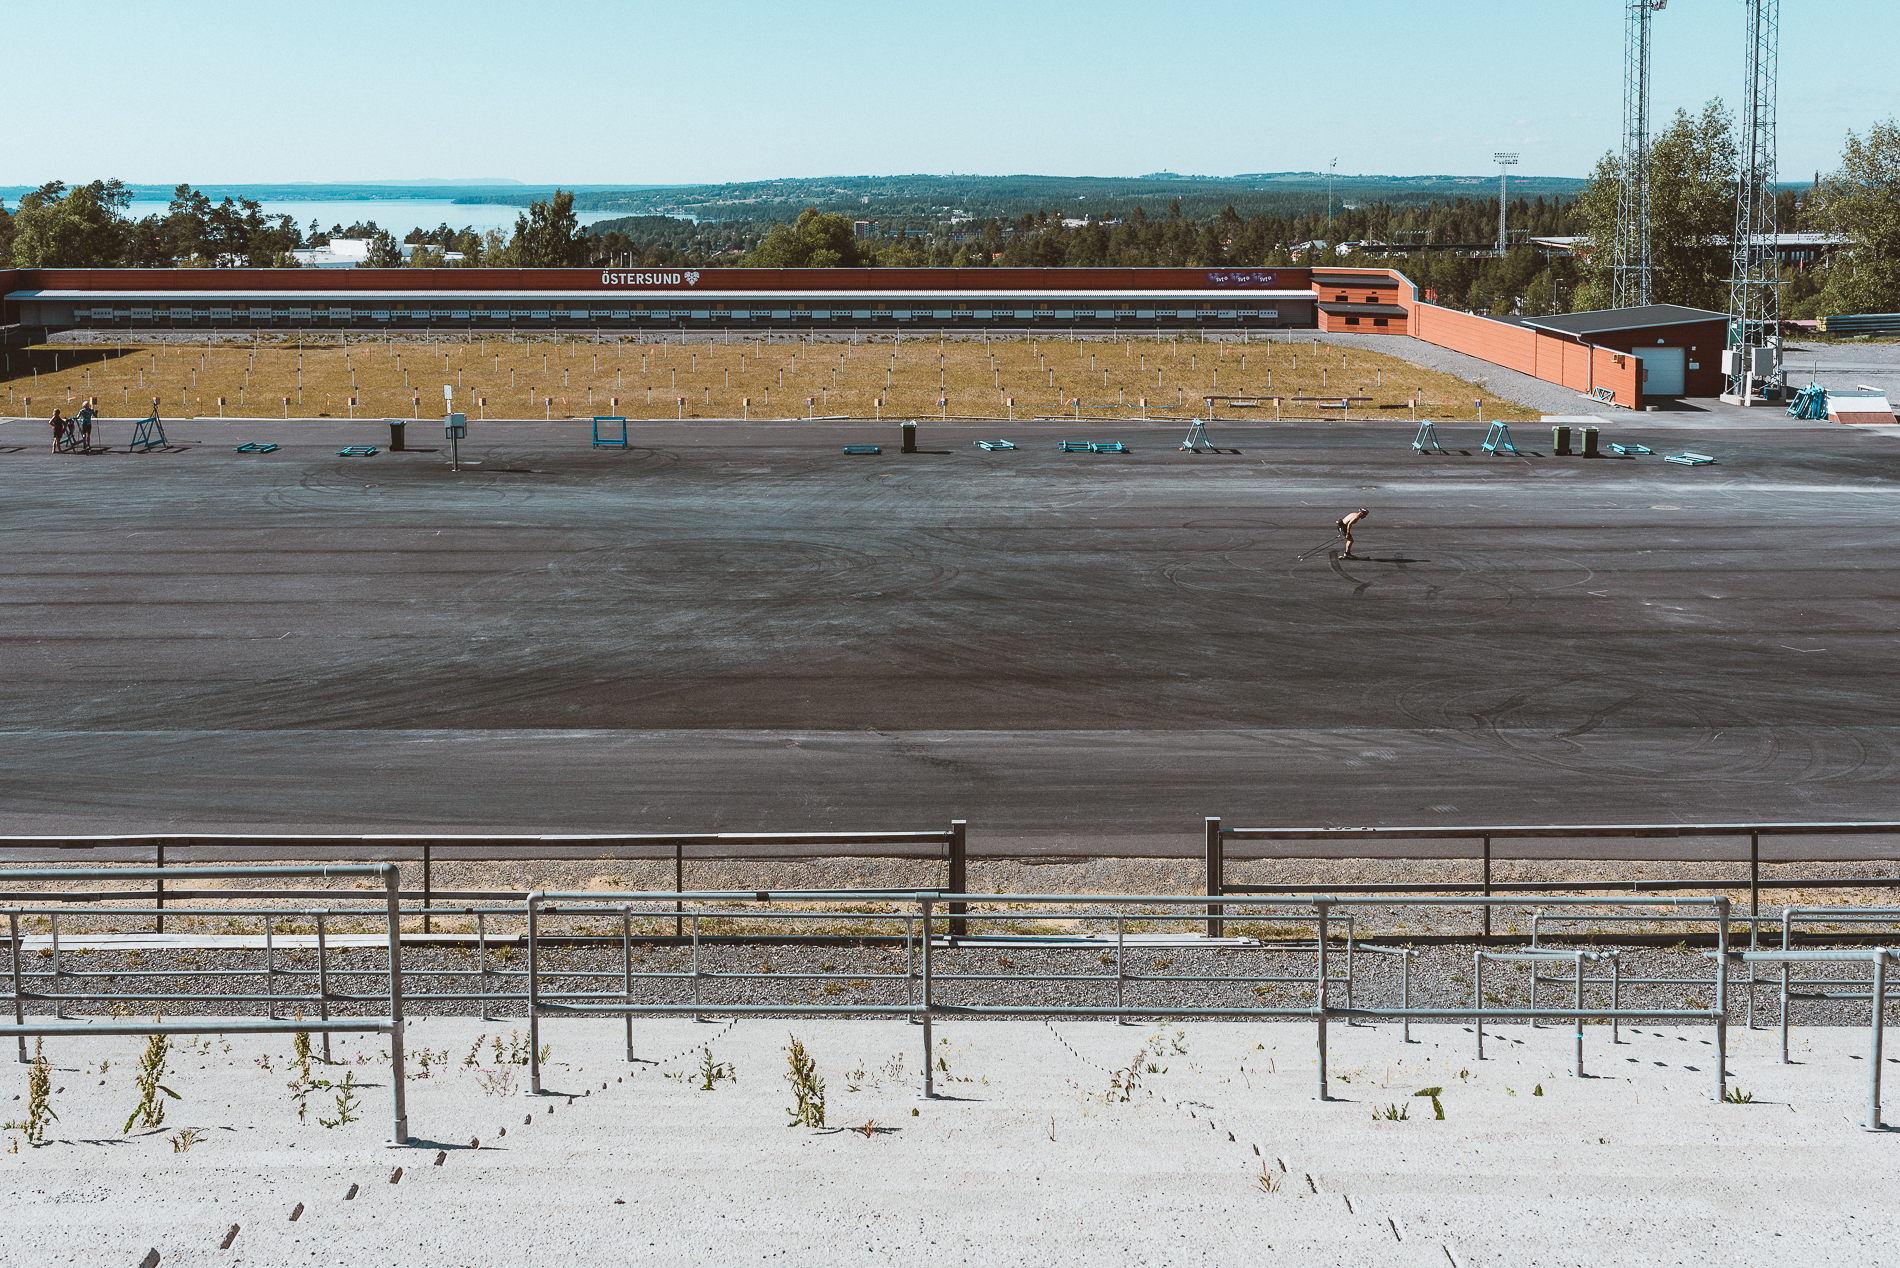 Biathlon Stadium, Oestersund, Sweden